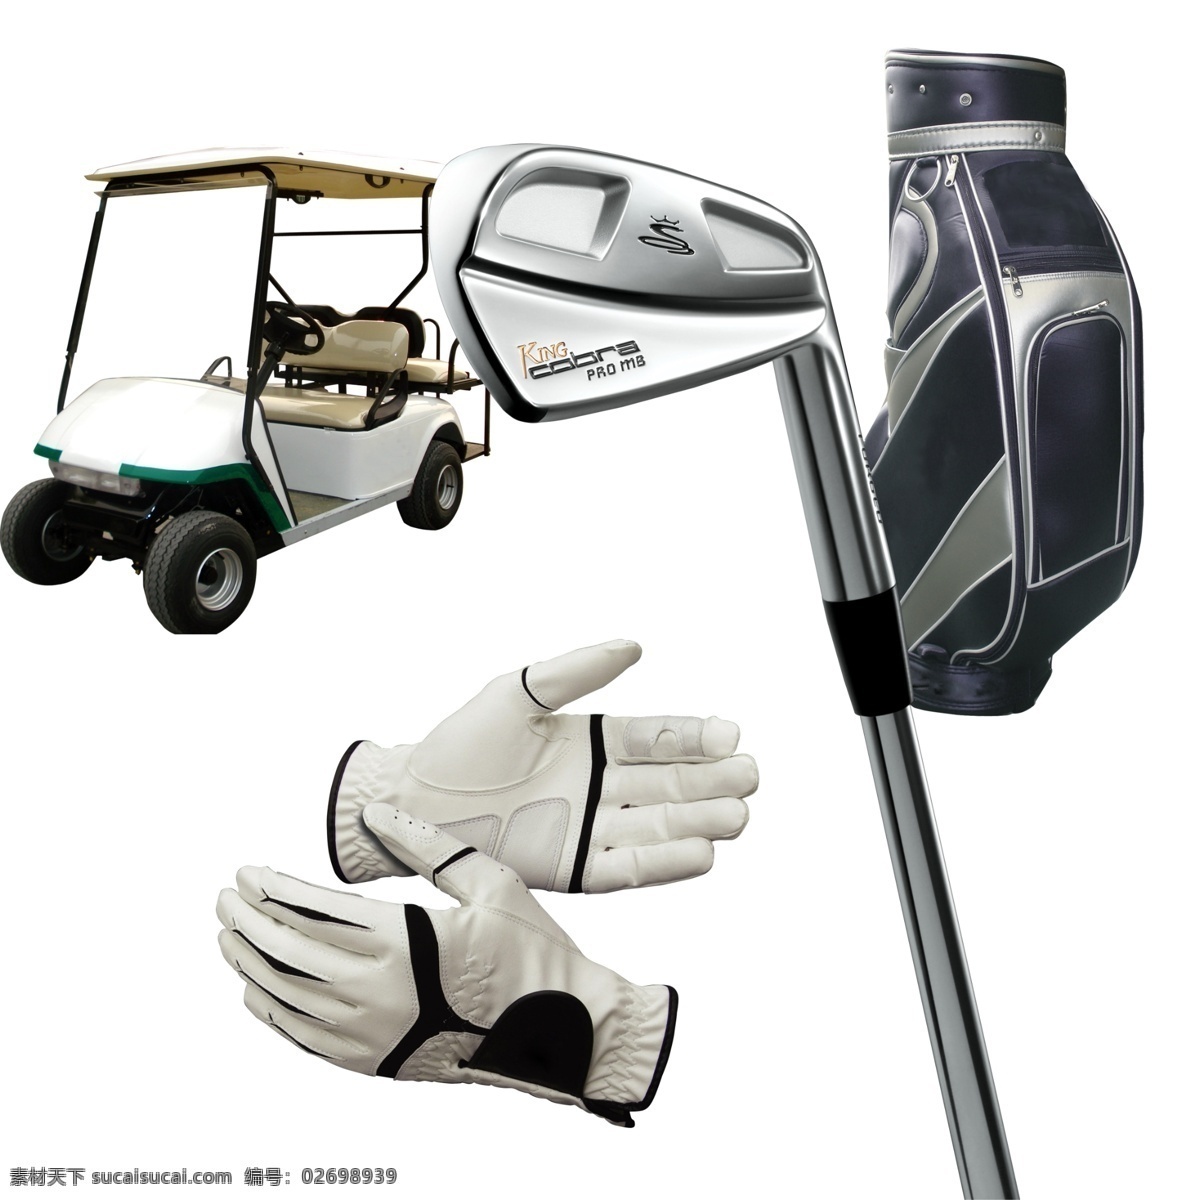 高尔夫 用品 包 房地产广告 高尔夫包 高尔夫车 高尔夫球杆 高尔夫用品 广告设计模板 球杆 手套 皮手套 源文件 淘宝素材 其他淘宝素材